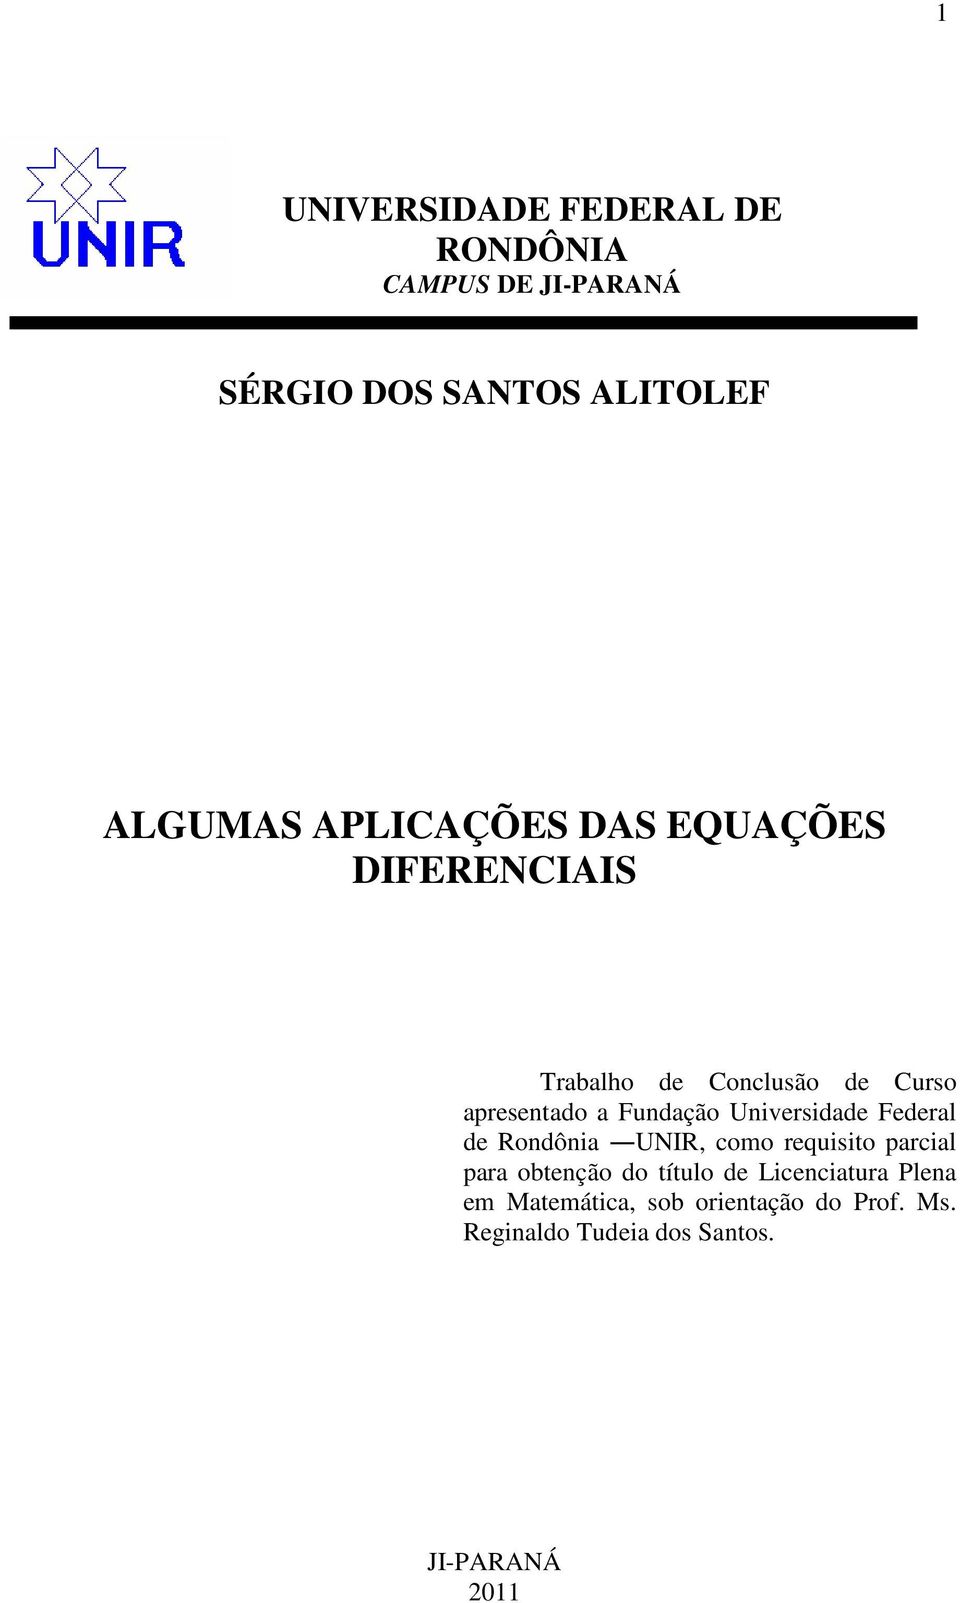 Universidade Federal de Rondônia UNIR, como requisito parcial para obtenção do título de